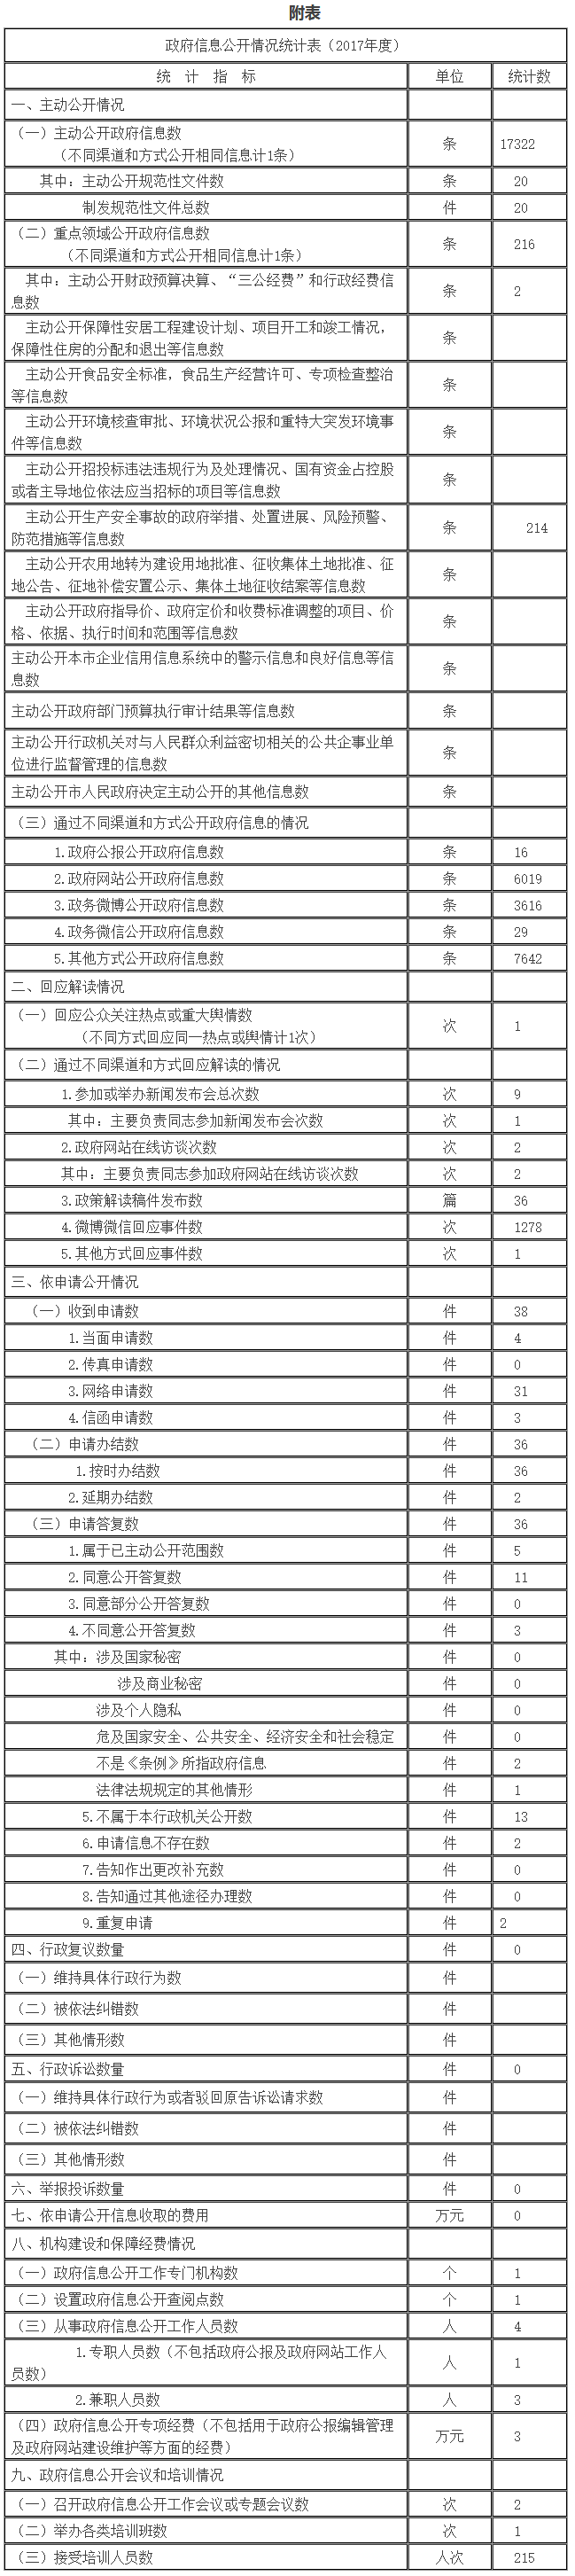 北京市城市管理委员会政府信息公开情况统计表(2017年度)